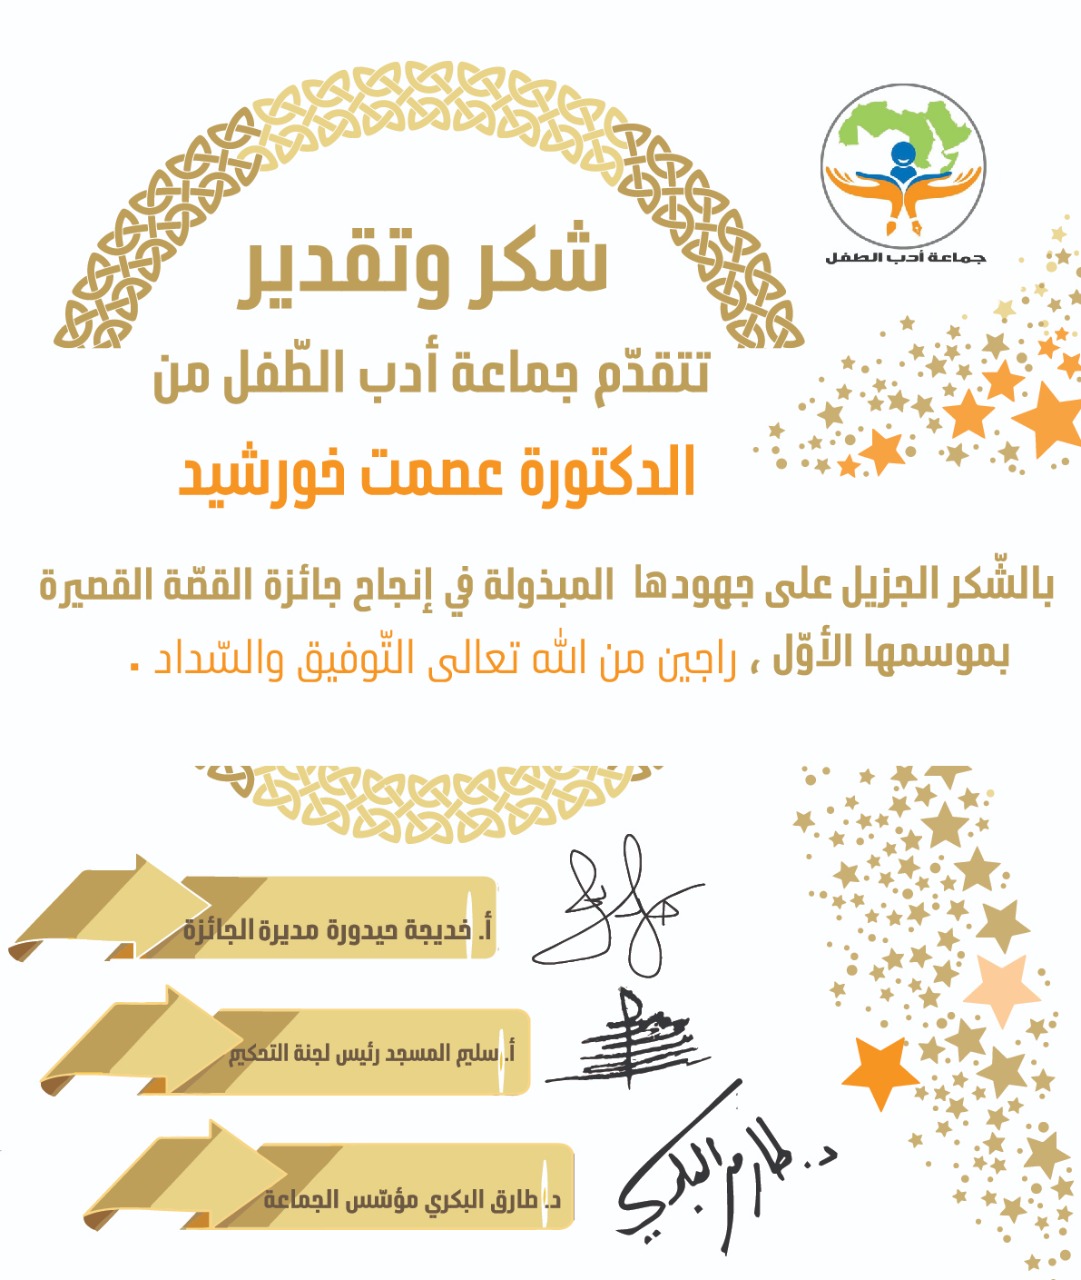 جوائز ومسابقات - جائزة القصة القصيرة لجماعة أدب الطفل العربي - الموسم الأول - قراءة وتحميل الكتاب الإلكترونيّ لقصص الفائزين بالمراتب العشر الأولى - موقع (كيدزوون | Kidzooon)